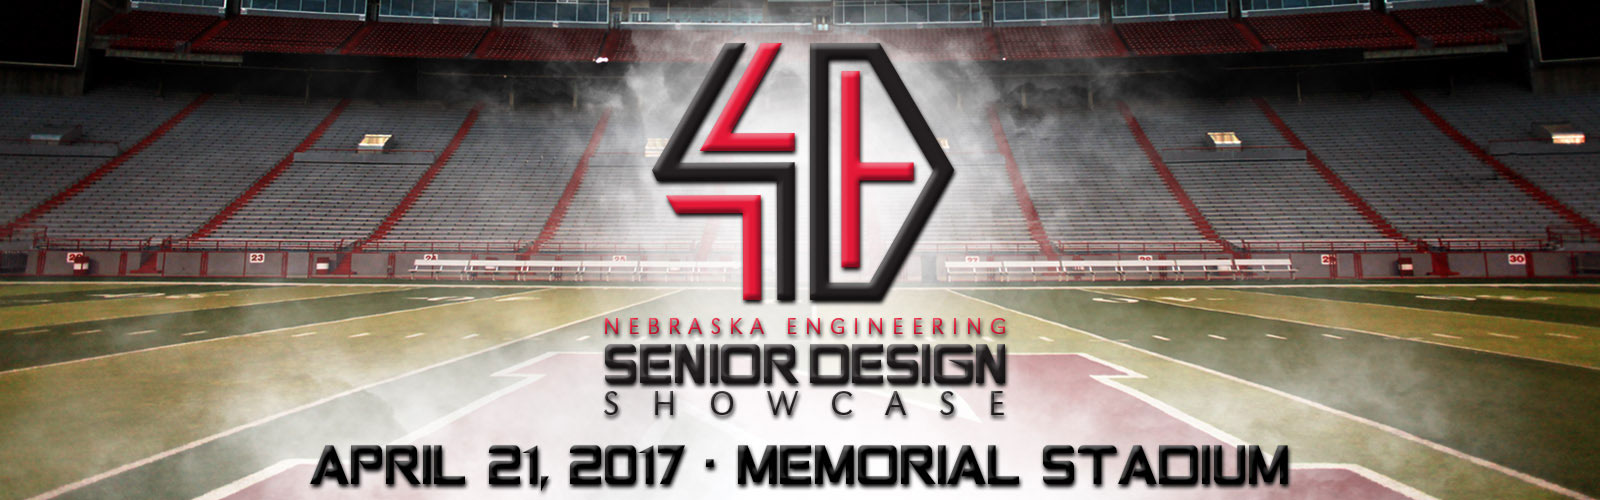 Senior Design Showcase is April 21